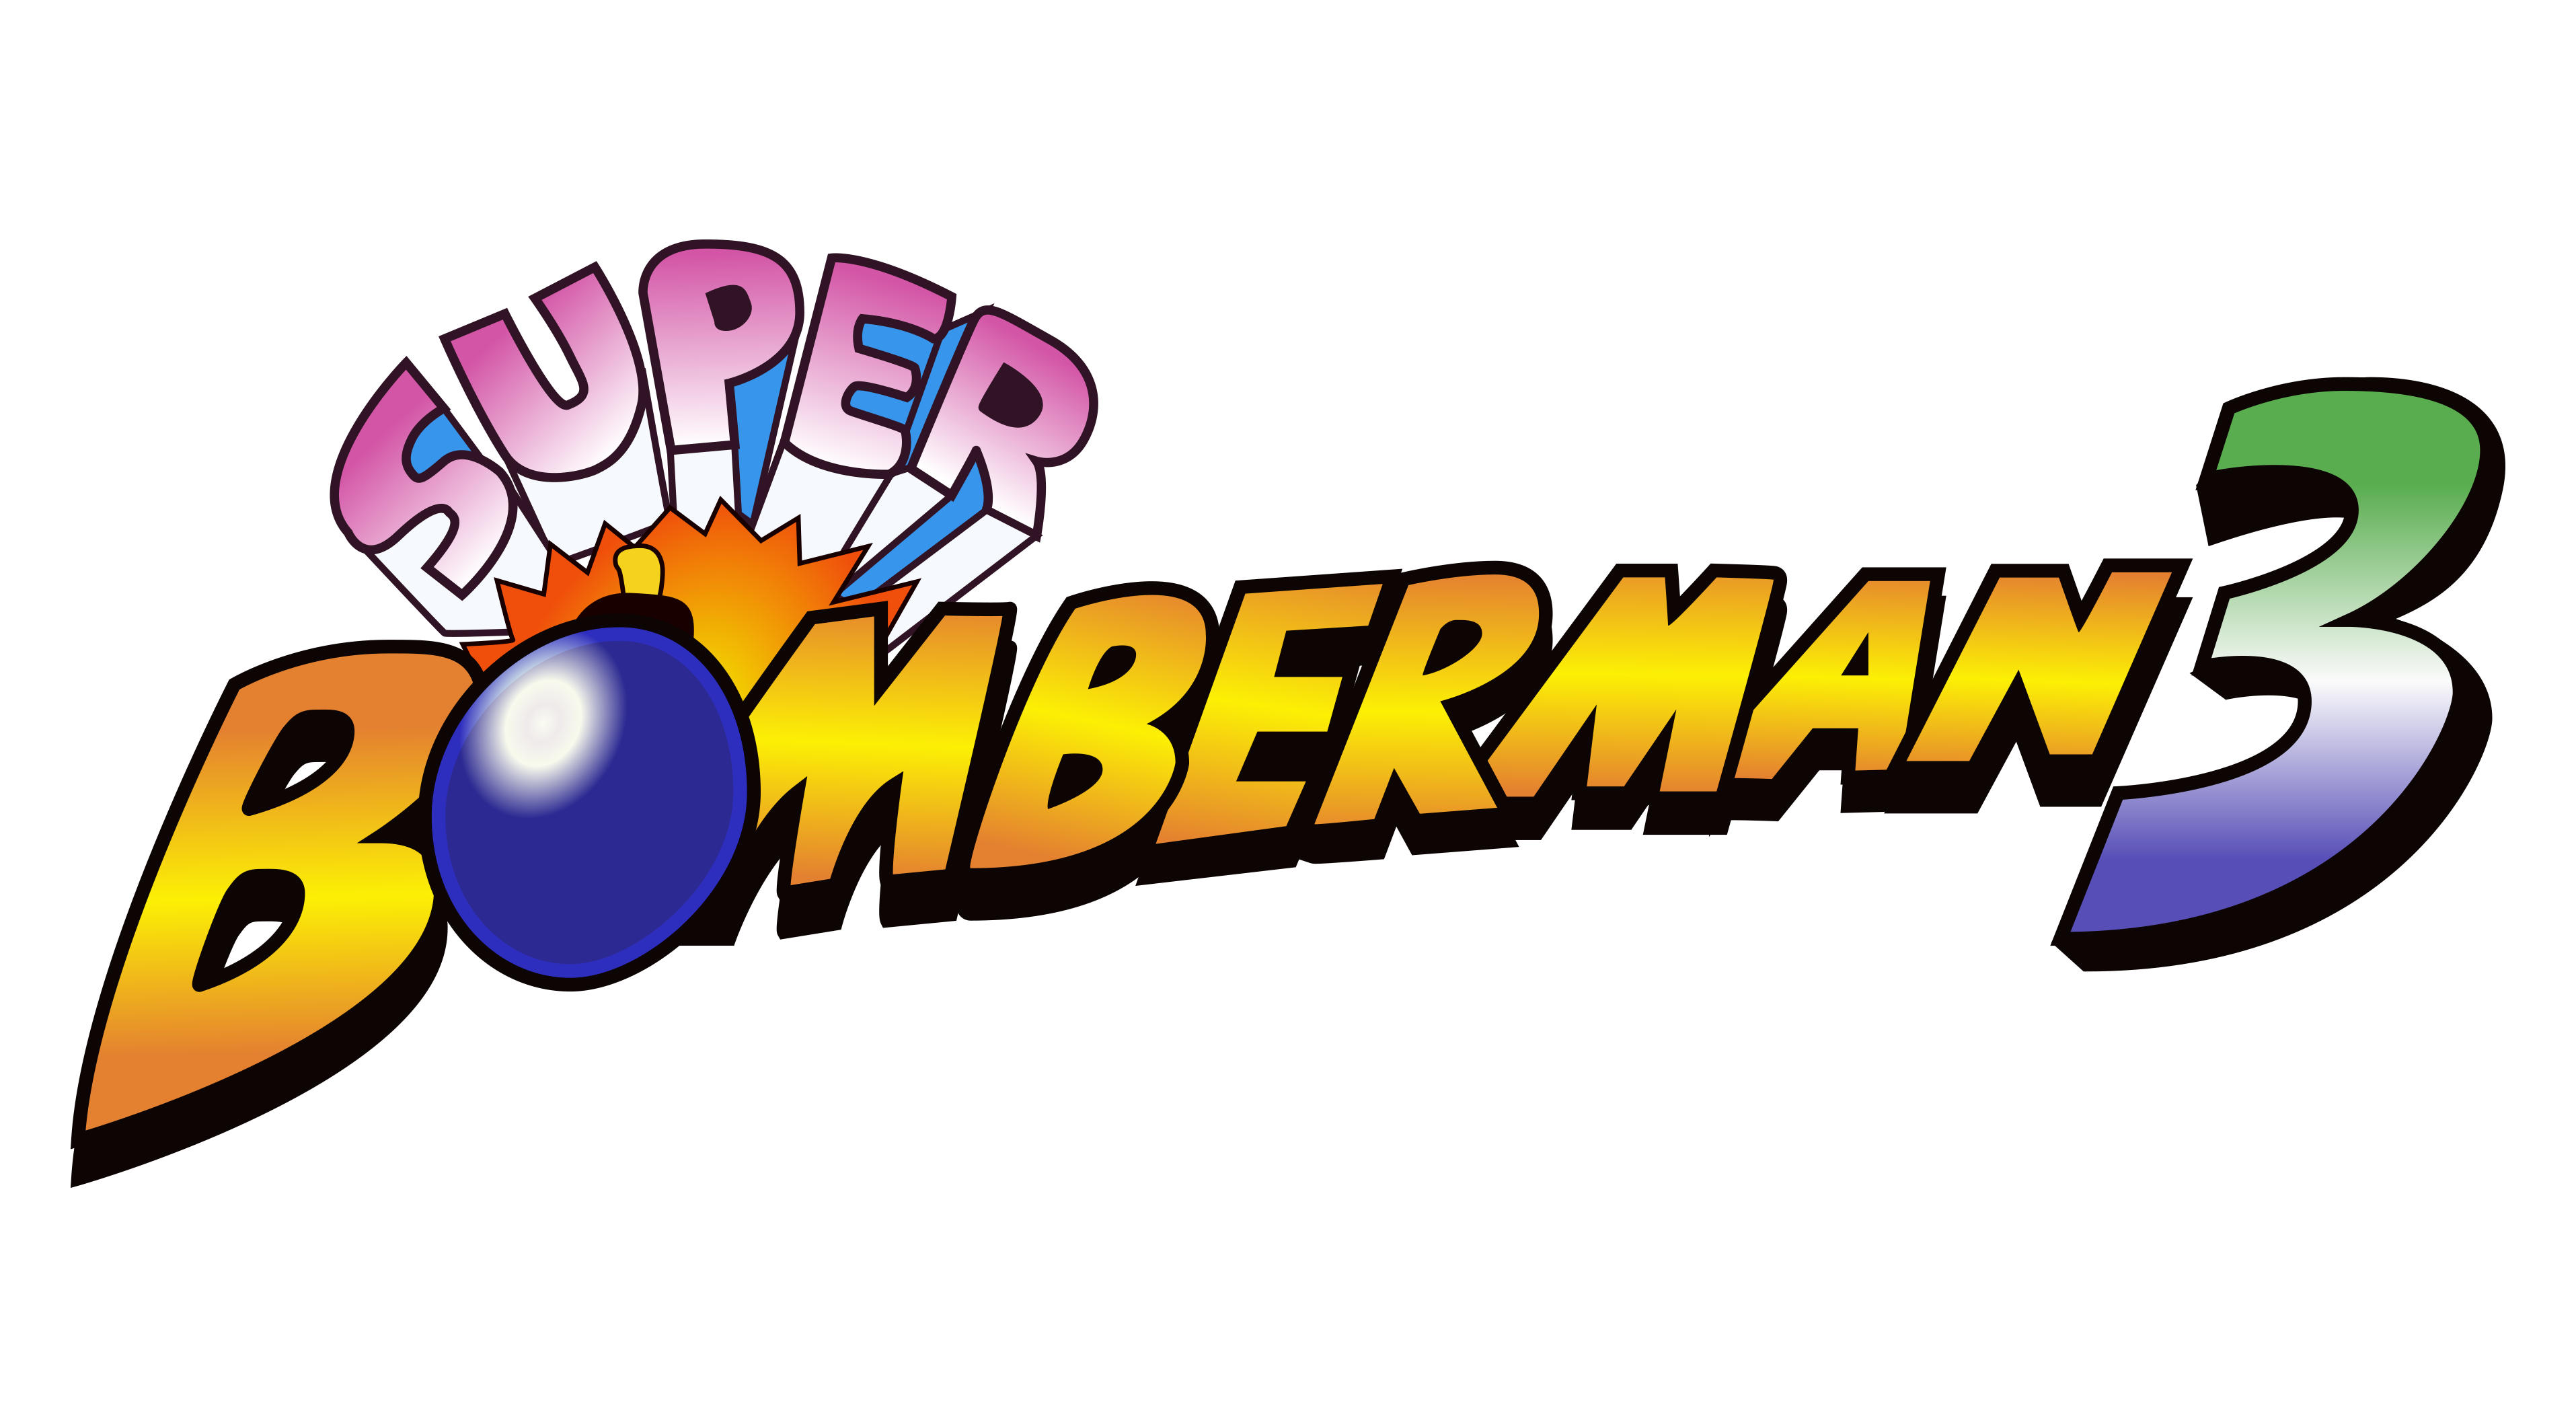 super bomberman r online logo